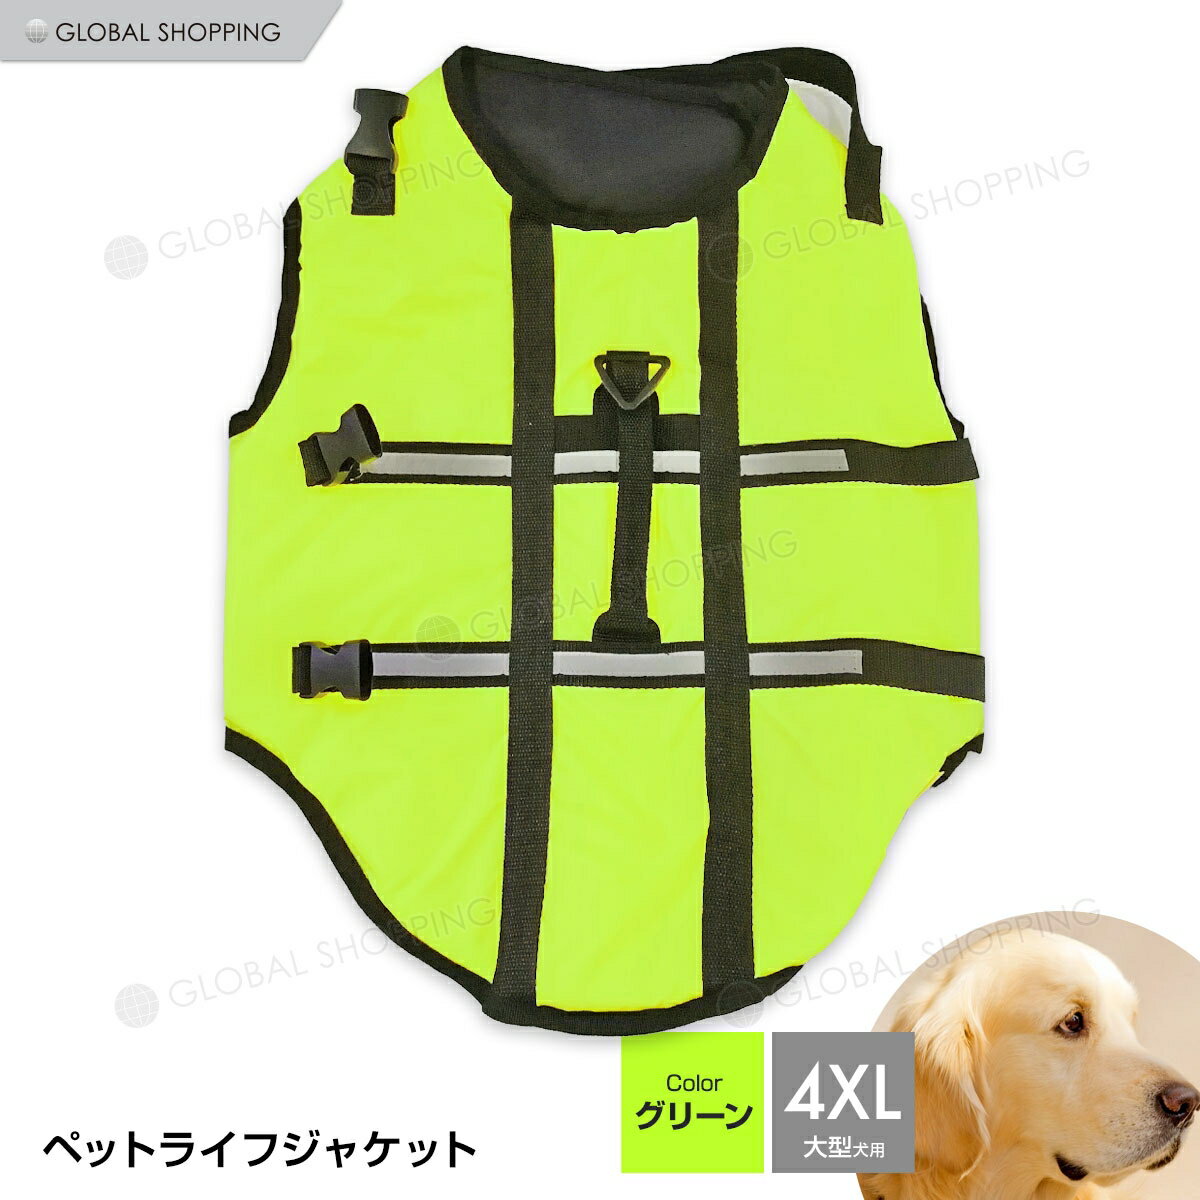 愛犬にライフジャケットを着て一緒に水遊び！！ 流れが強くなったり、水深が急に深くなったりで海や川には危険がいっぱい！ 水遊びが大好きなワンちゃんに装着して楽しく安全に水遊びを楽しみましょう！！ ※ライフジャケットをしていても安全である保証はありませんので、愛犬をちゃんと見守ってあげてください。 ※サイズは、実寸を測っているため多少の誤差はございます。 ※実商品とPC画面では、多少見た目の色に違いがございます。 サイズ：画像参照 カラー：グリーン